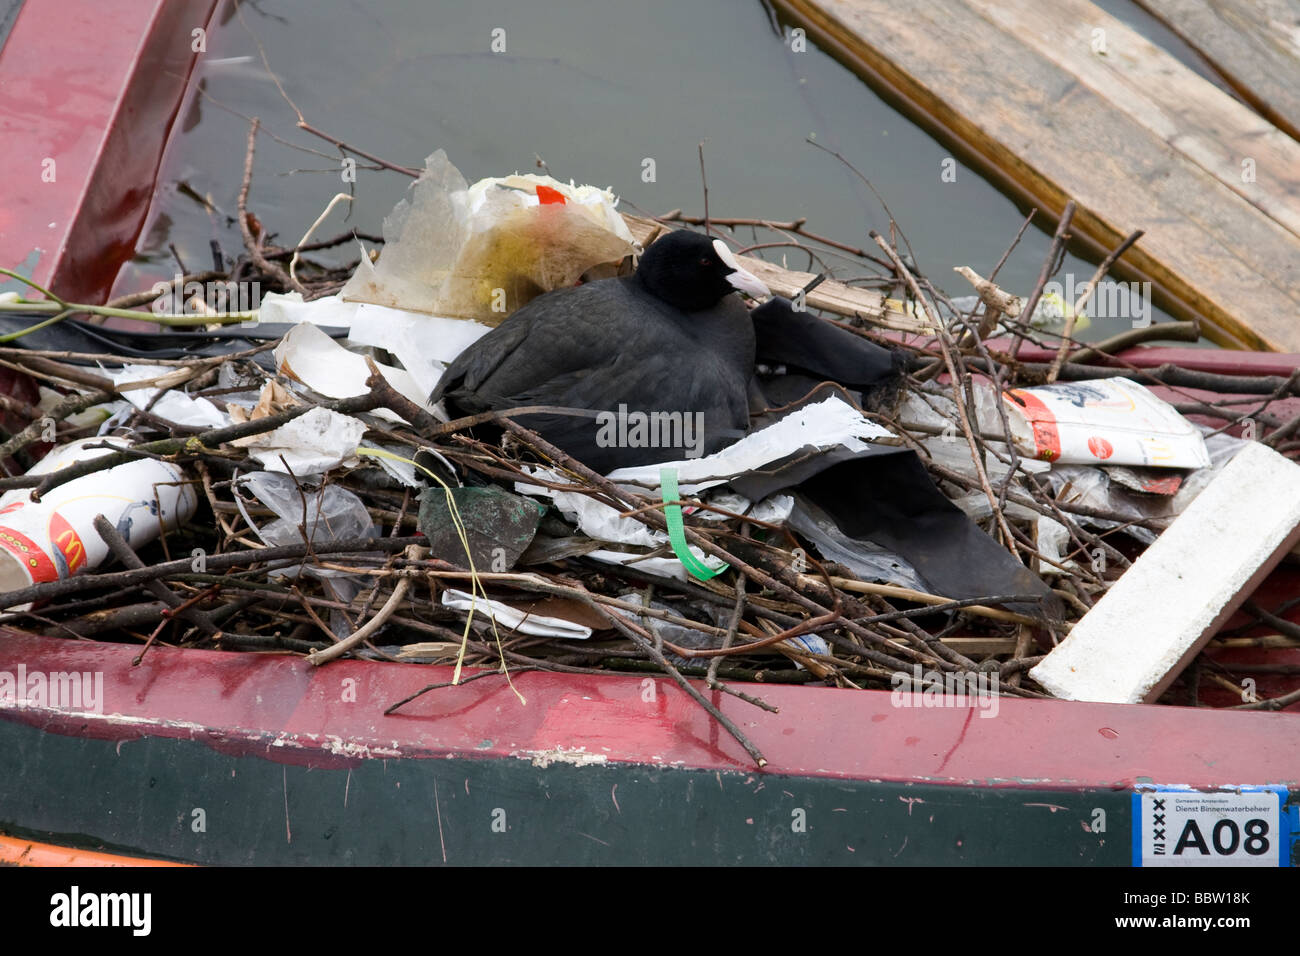 Foulque de nicher dans des détritus sur un bateau désaffecté dans un canal à Amsterdam Banque D'Images